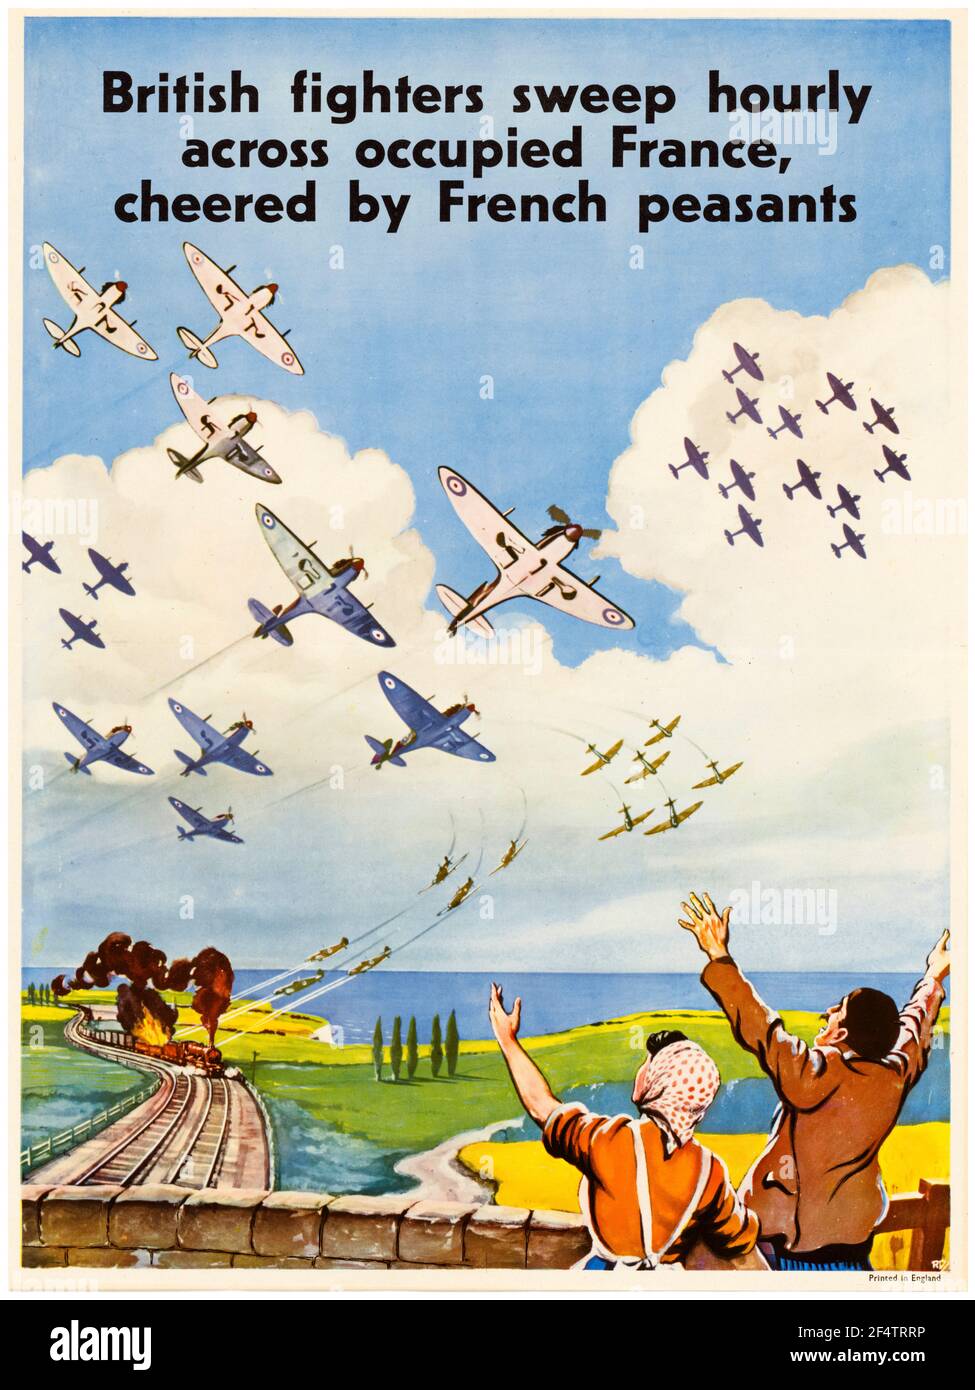 WW2, los combatientes británicos de la RAF barren cada hora a través de la Francia ocupada aclamados por los campesinos franceses, (los combatientes de la RAF atacan un tren), cartel de motivación, 1942-1945 Foto de stock